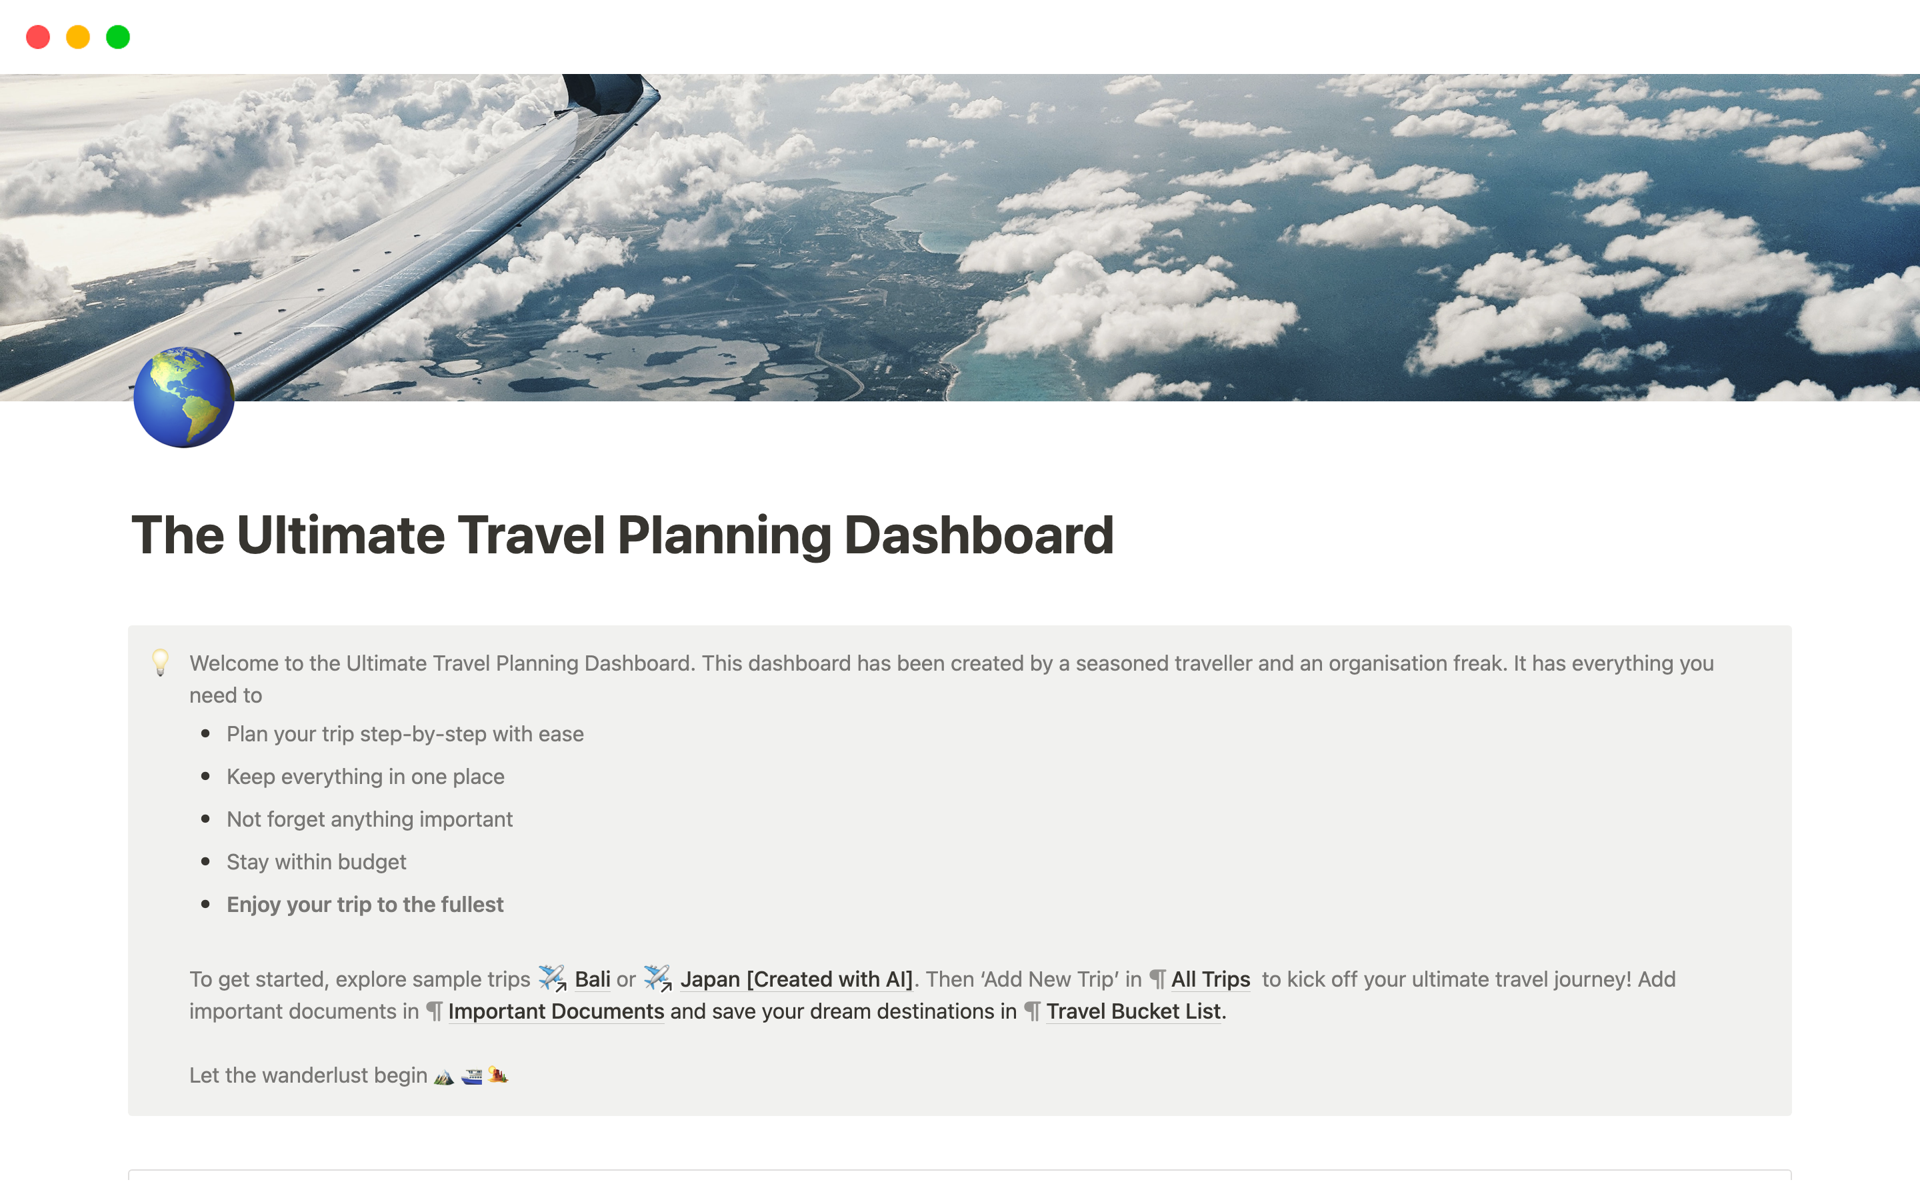 Uma prévia do modelo para Travel Planner | All You Need